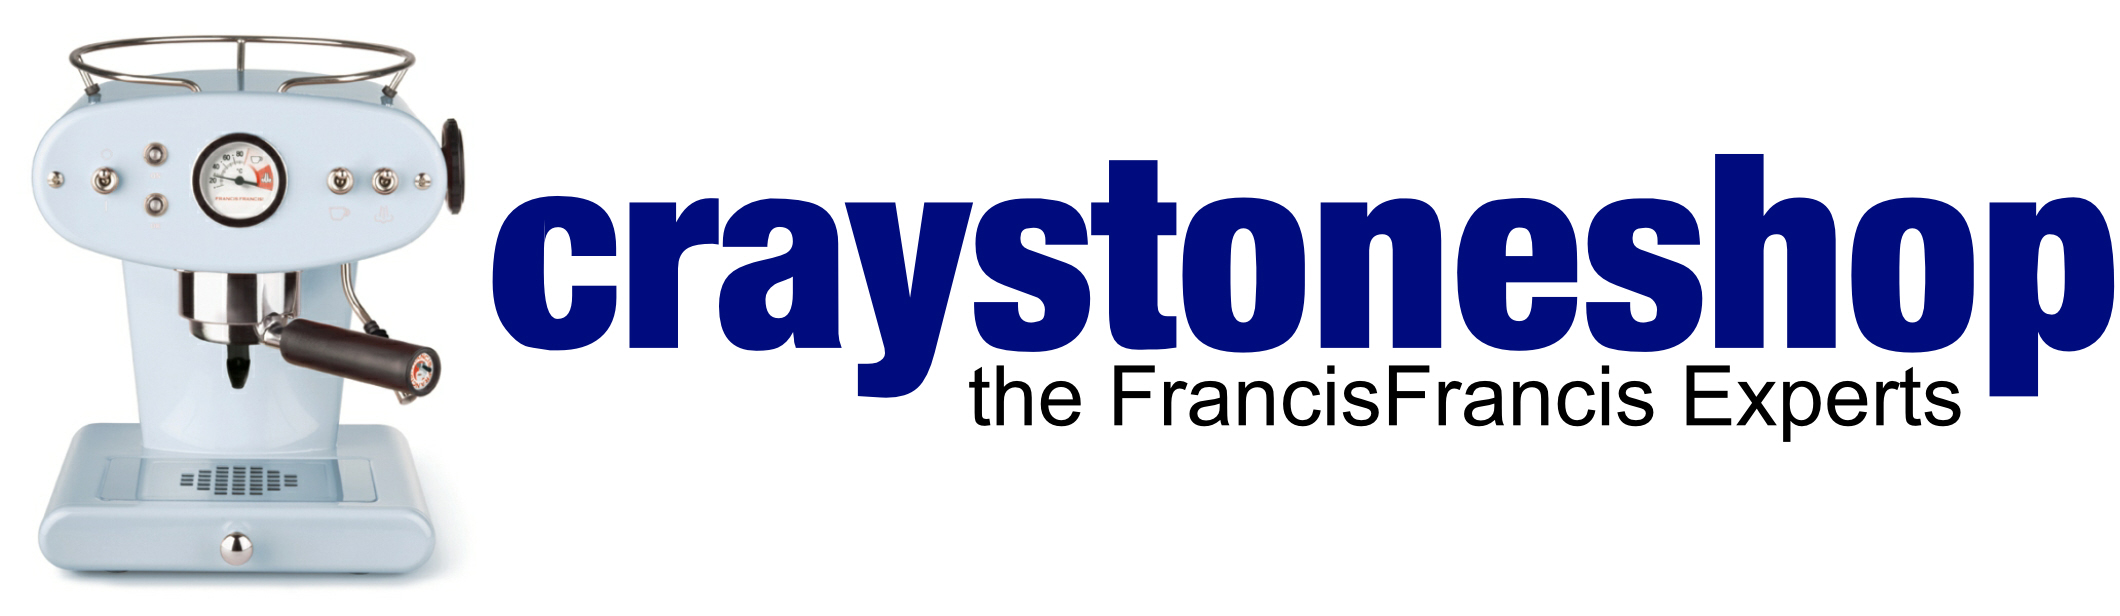 CraystoneShop FrancisFrancis machines